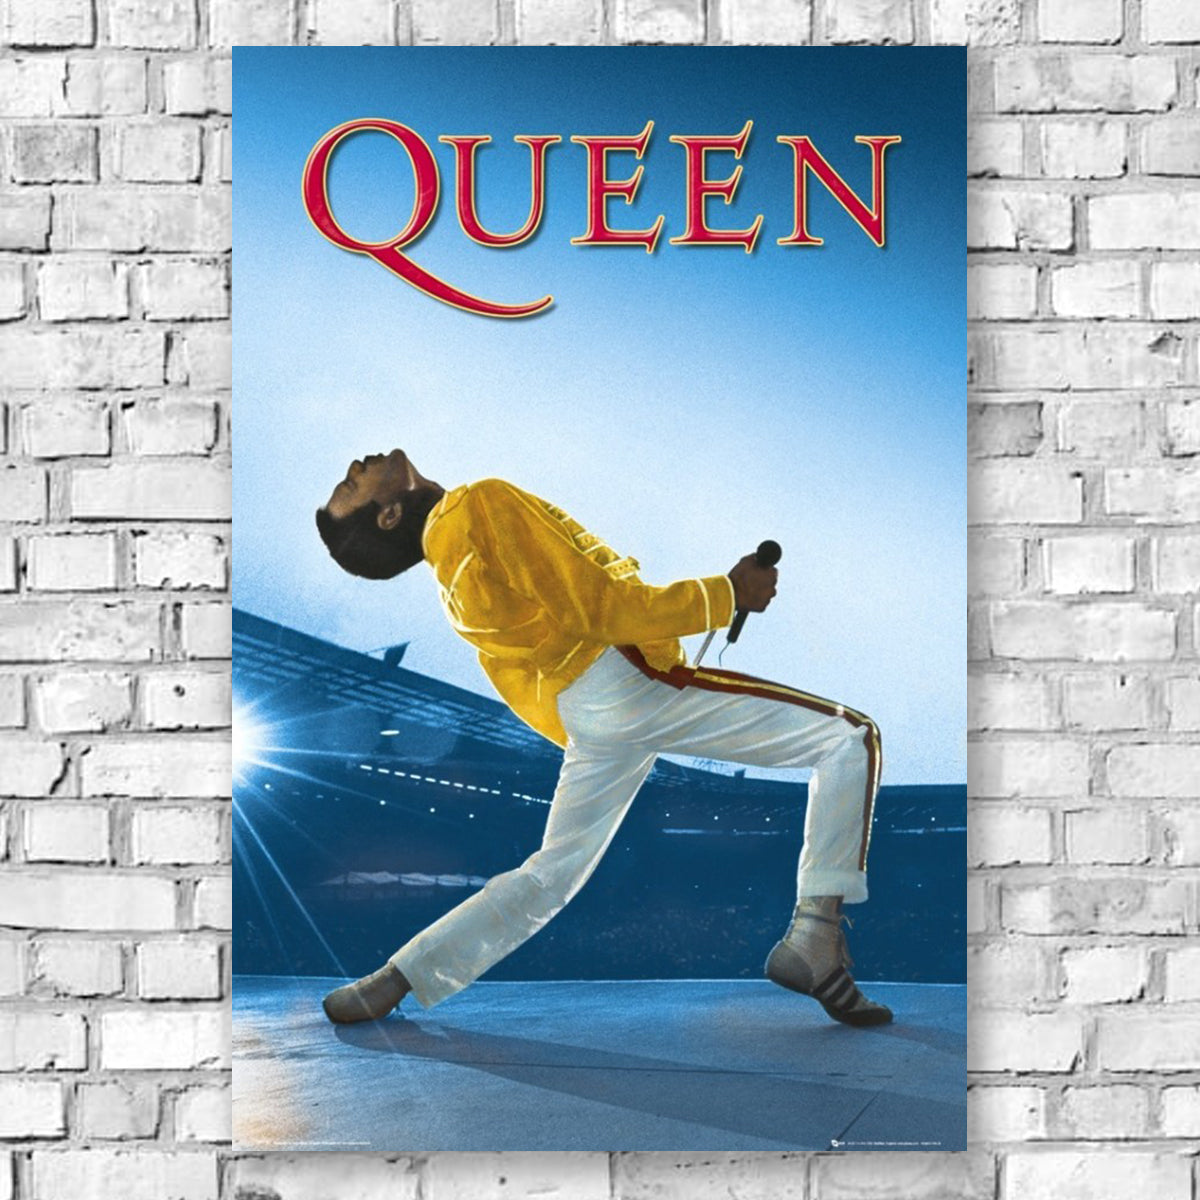 Queen Live at Wembley Poster - Indoor Outdoors